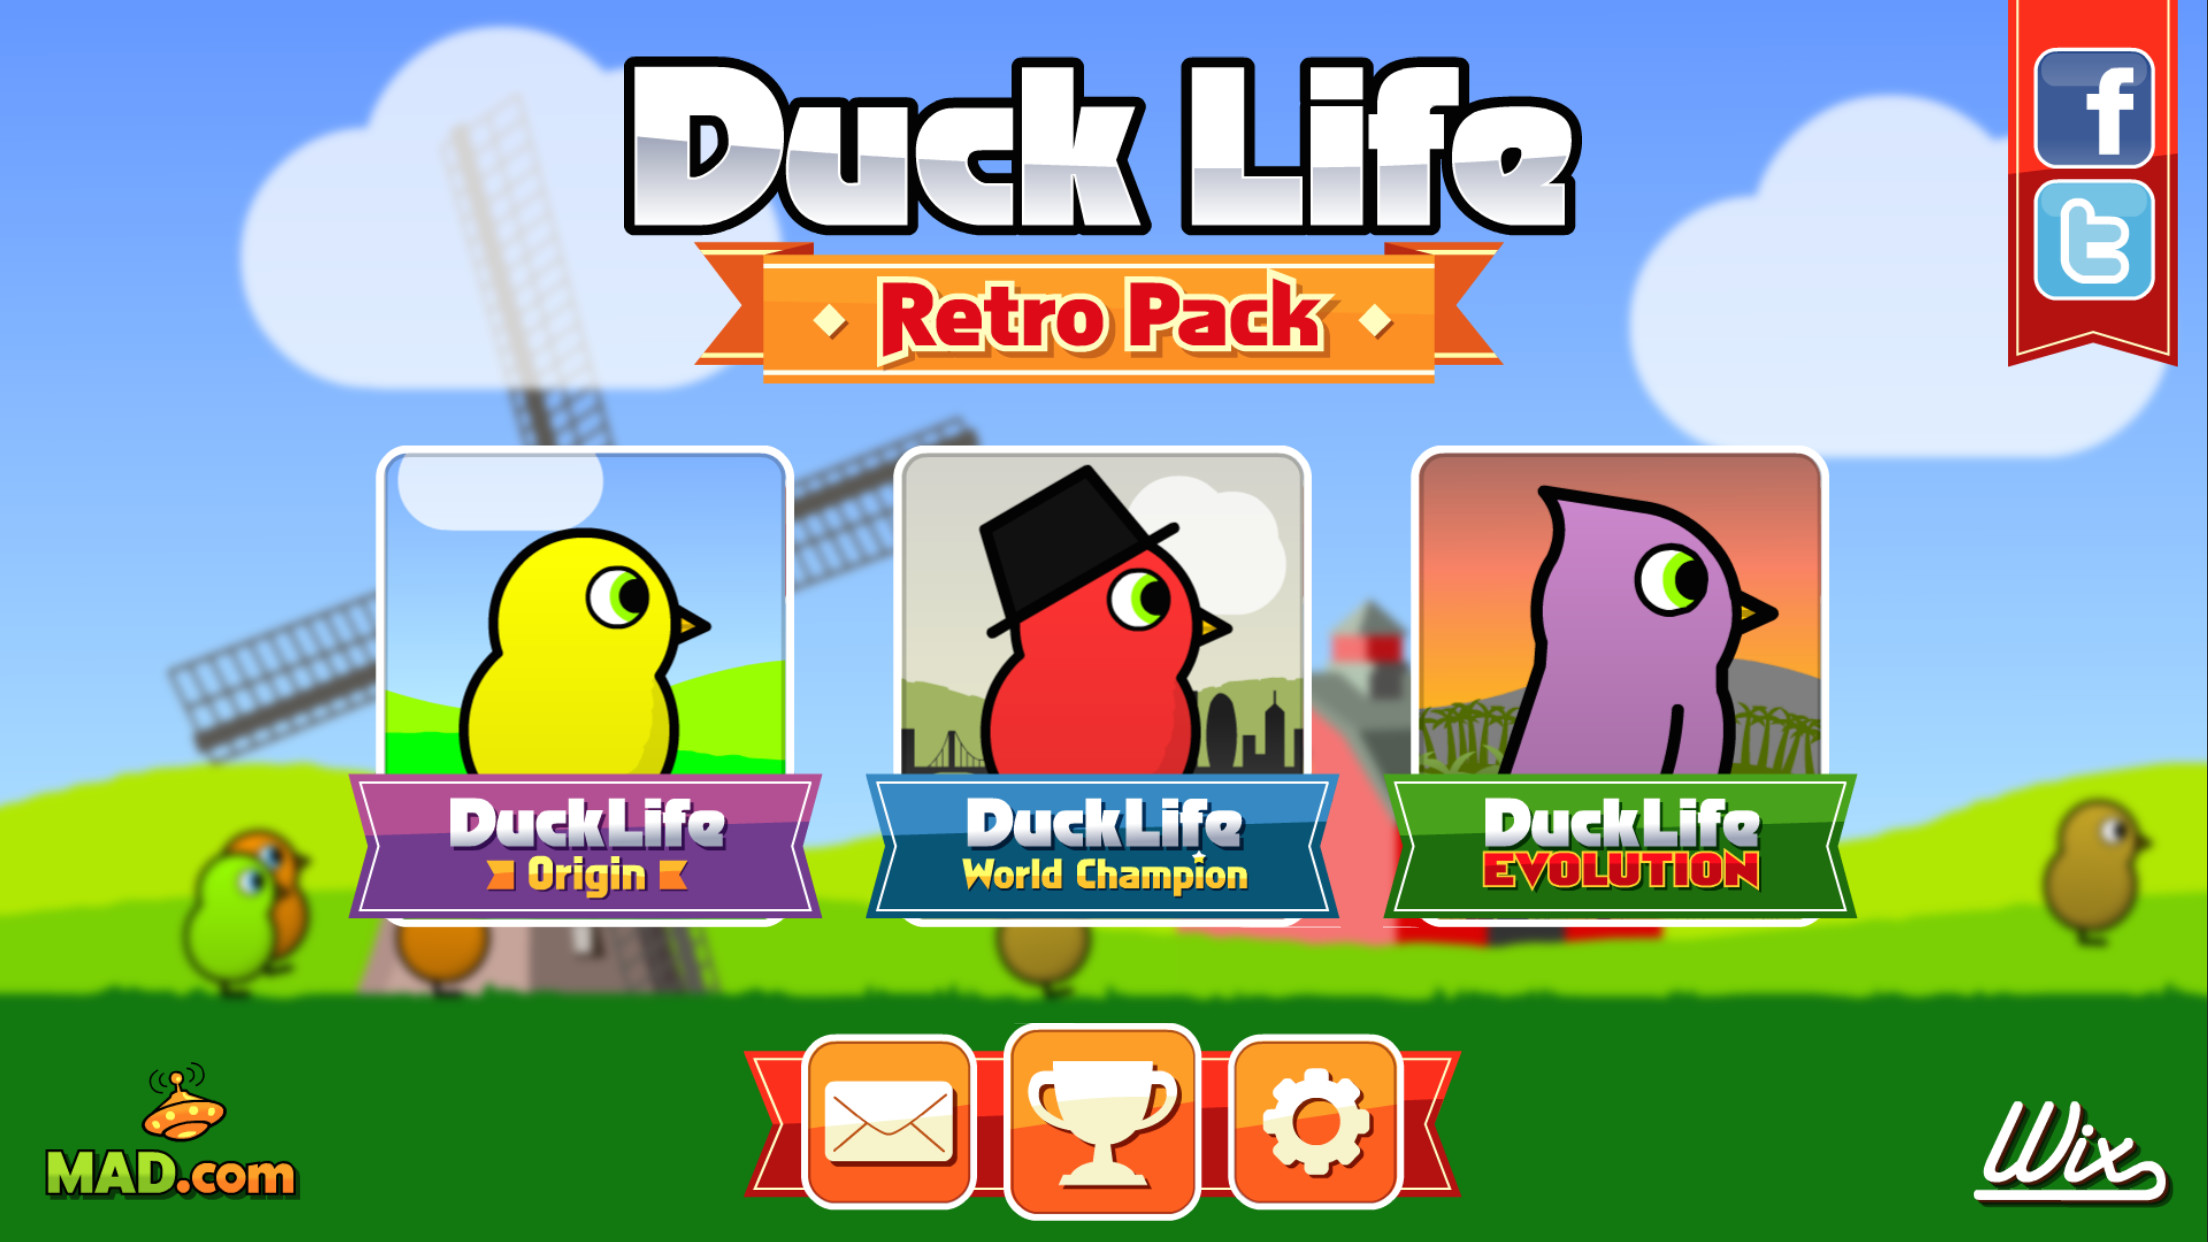 Duck Life: Retro Pack screenshot